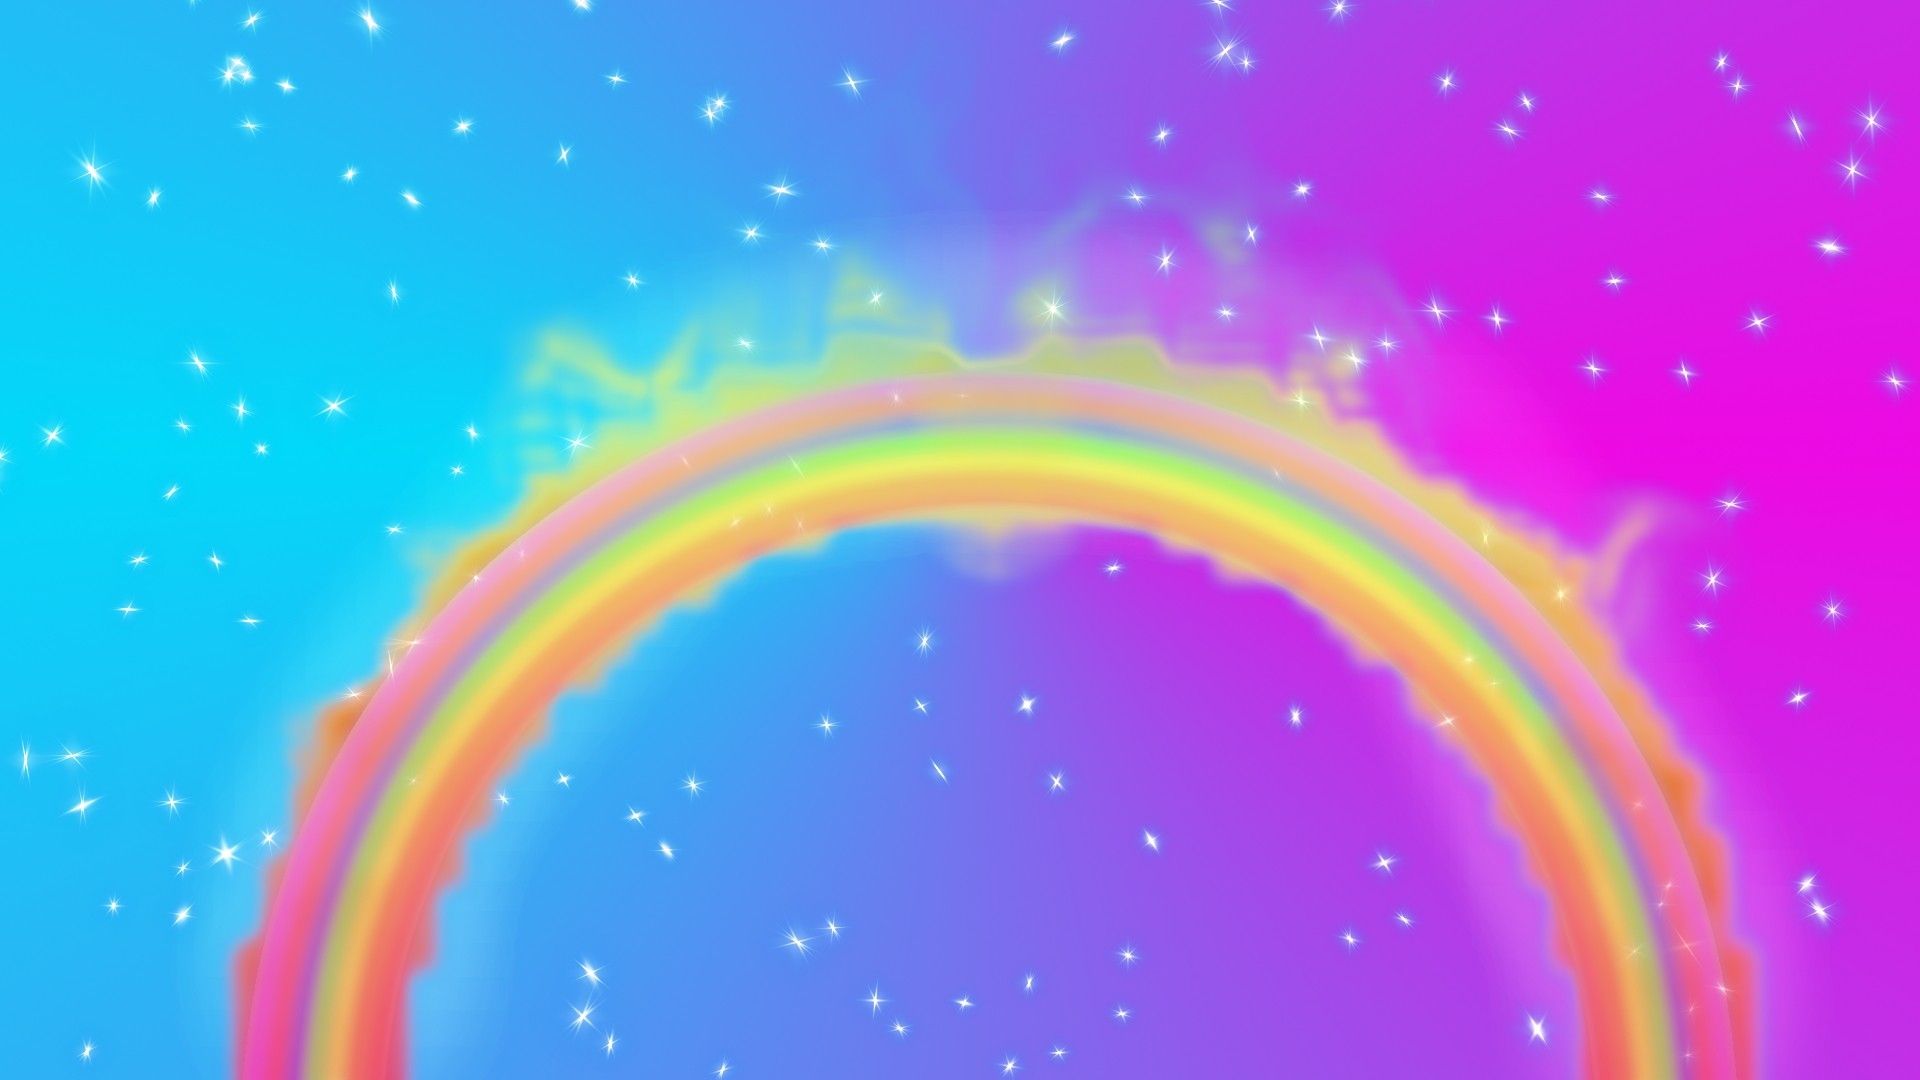 Rainbow Aesthetic Desktop Wallpapers Free Download  PixelsTalkNet